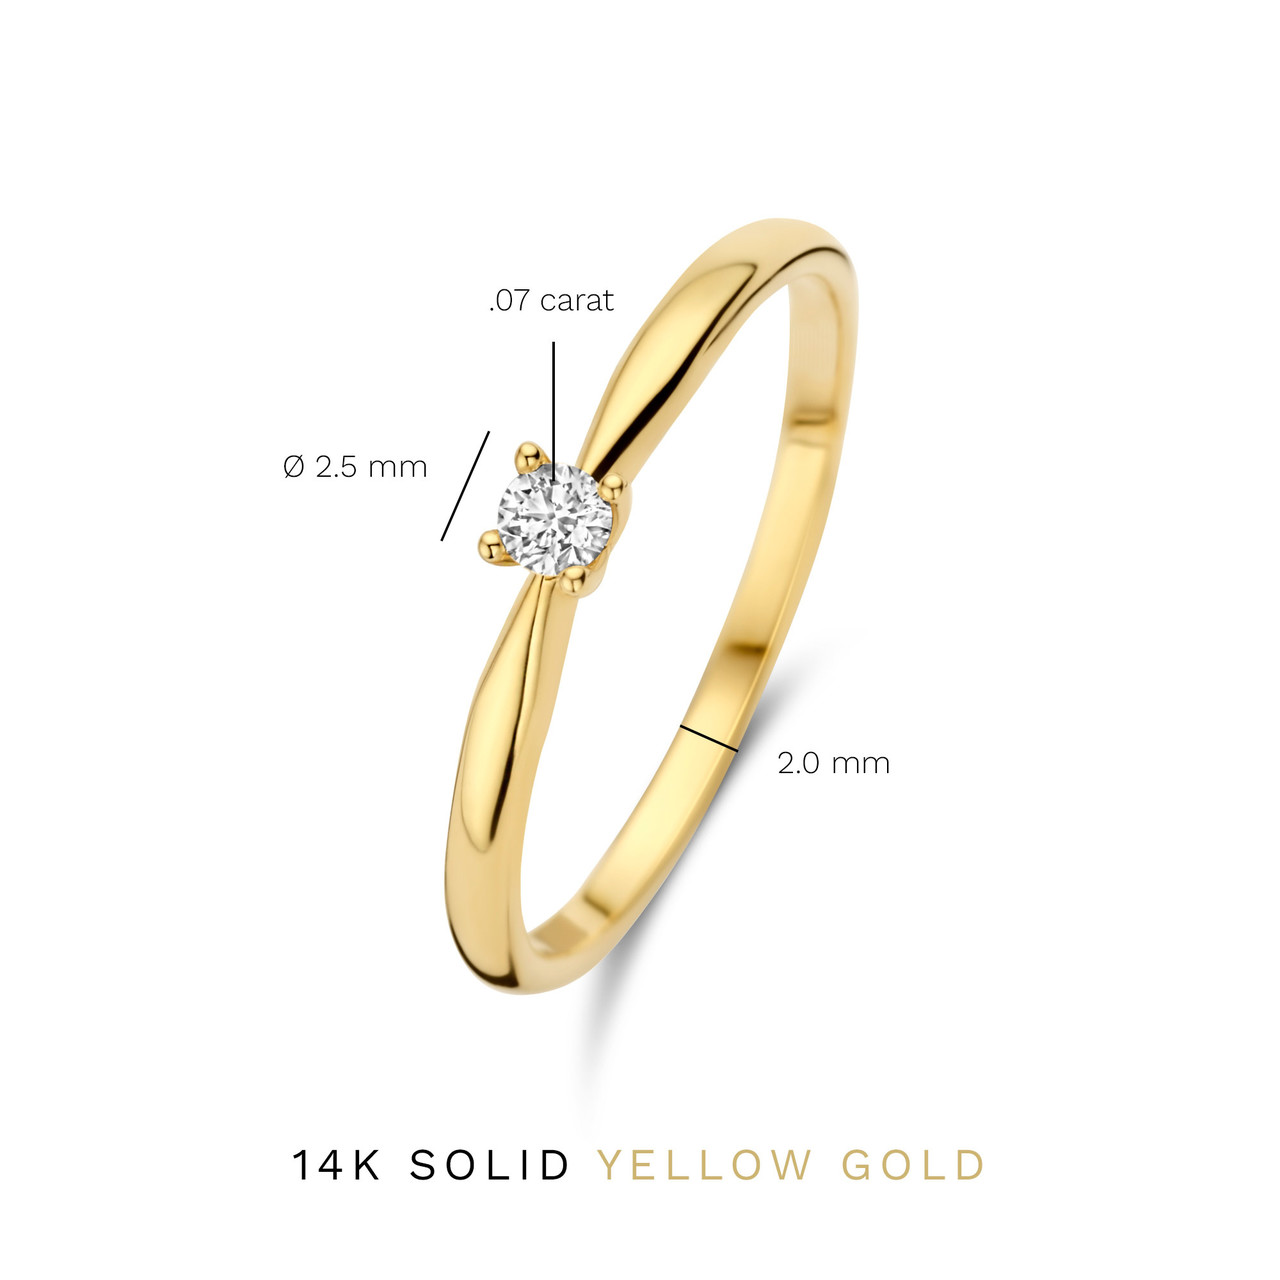 Beschrijving geschenk Interactie Isabel Bernard - 14 kt gouden ring | diamant 0.07 ct | IBD330002